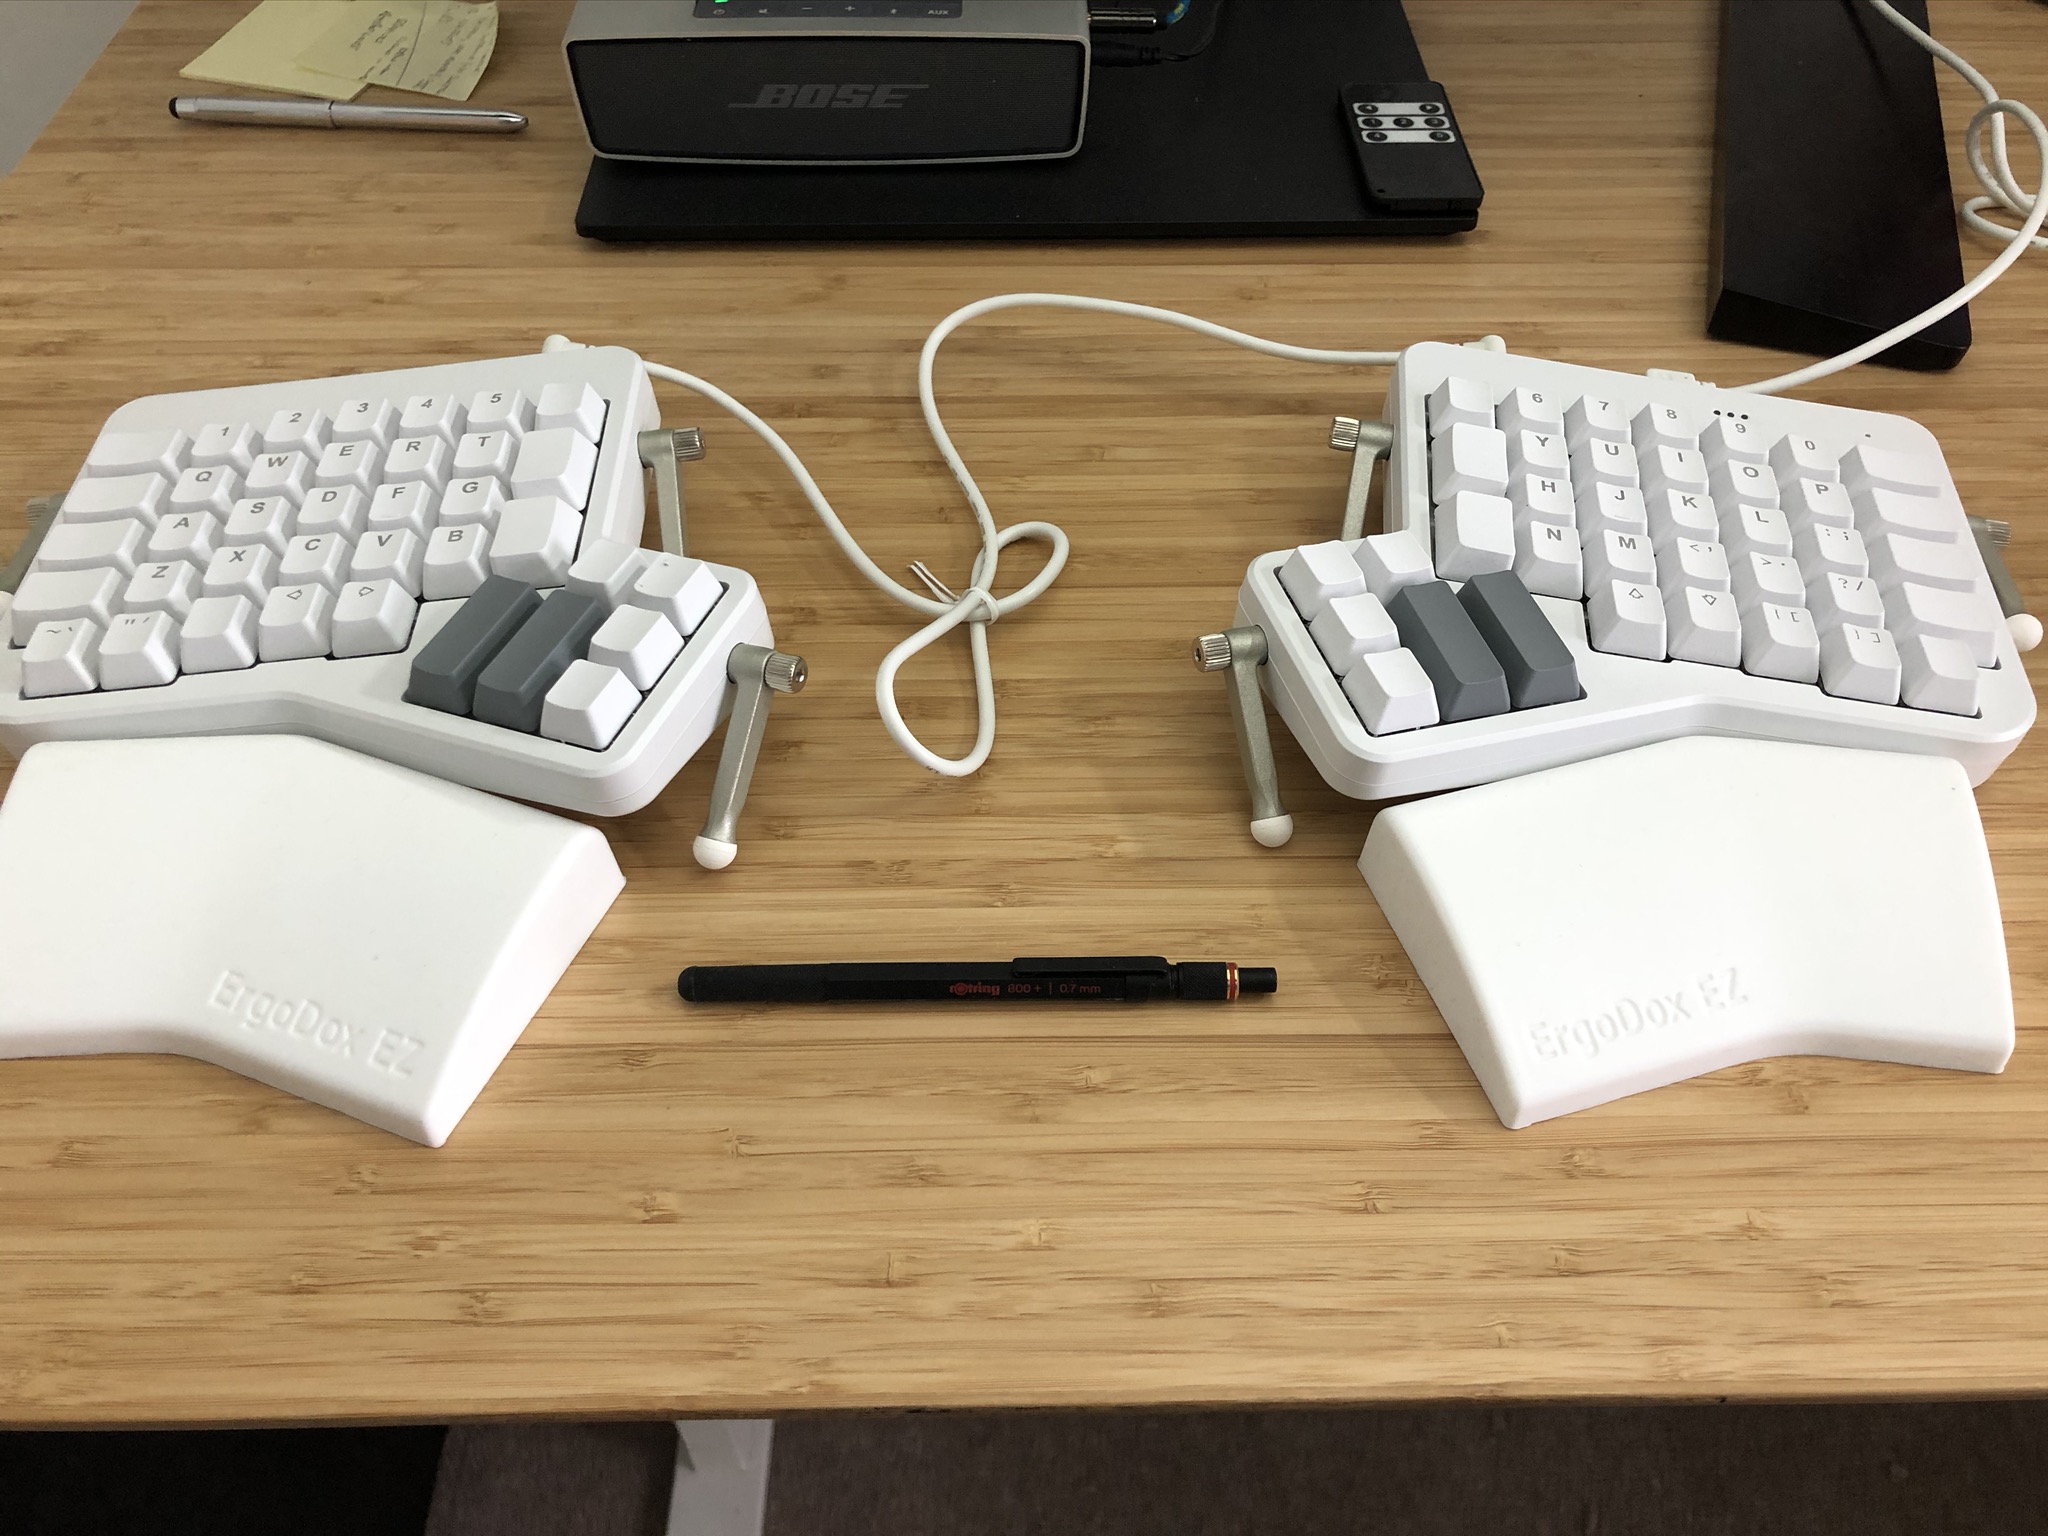 ErgoDox EZ Keyboard on a desk